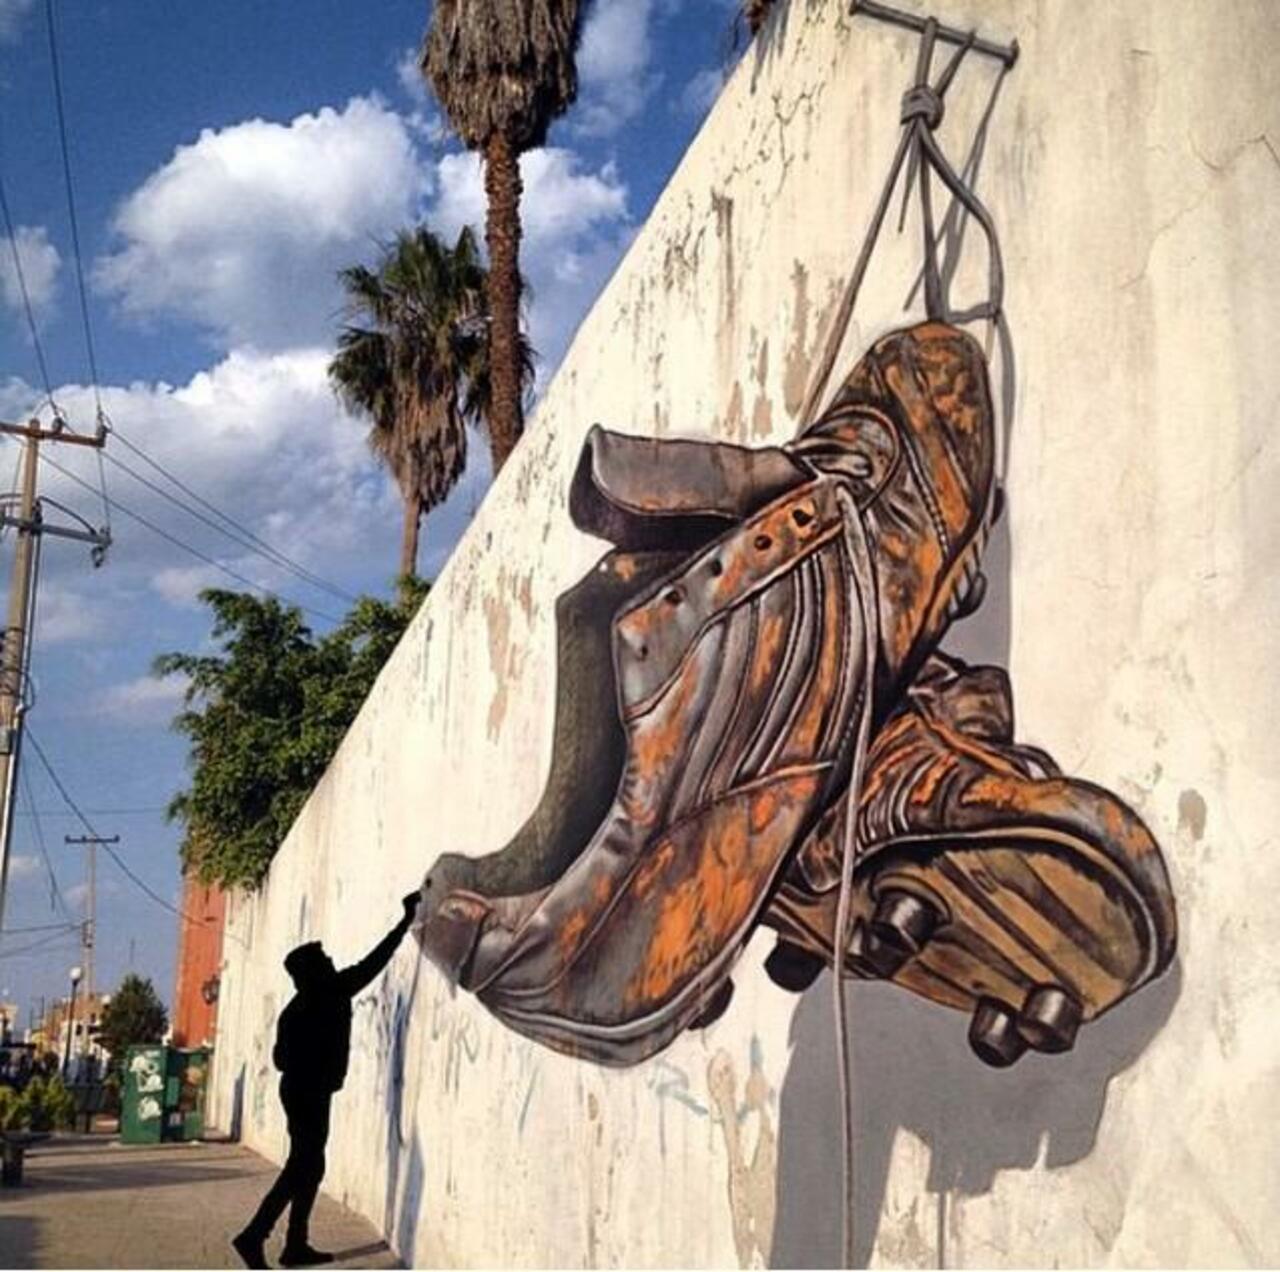 insane! RT @GoogleStreetArt: Awesome anamorphic 3D Street Art by Juandres Vera 

#art #graffiti #mural #streetart http://t.co/tlHjecHisZ